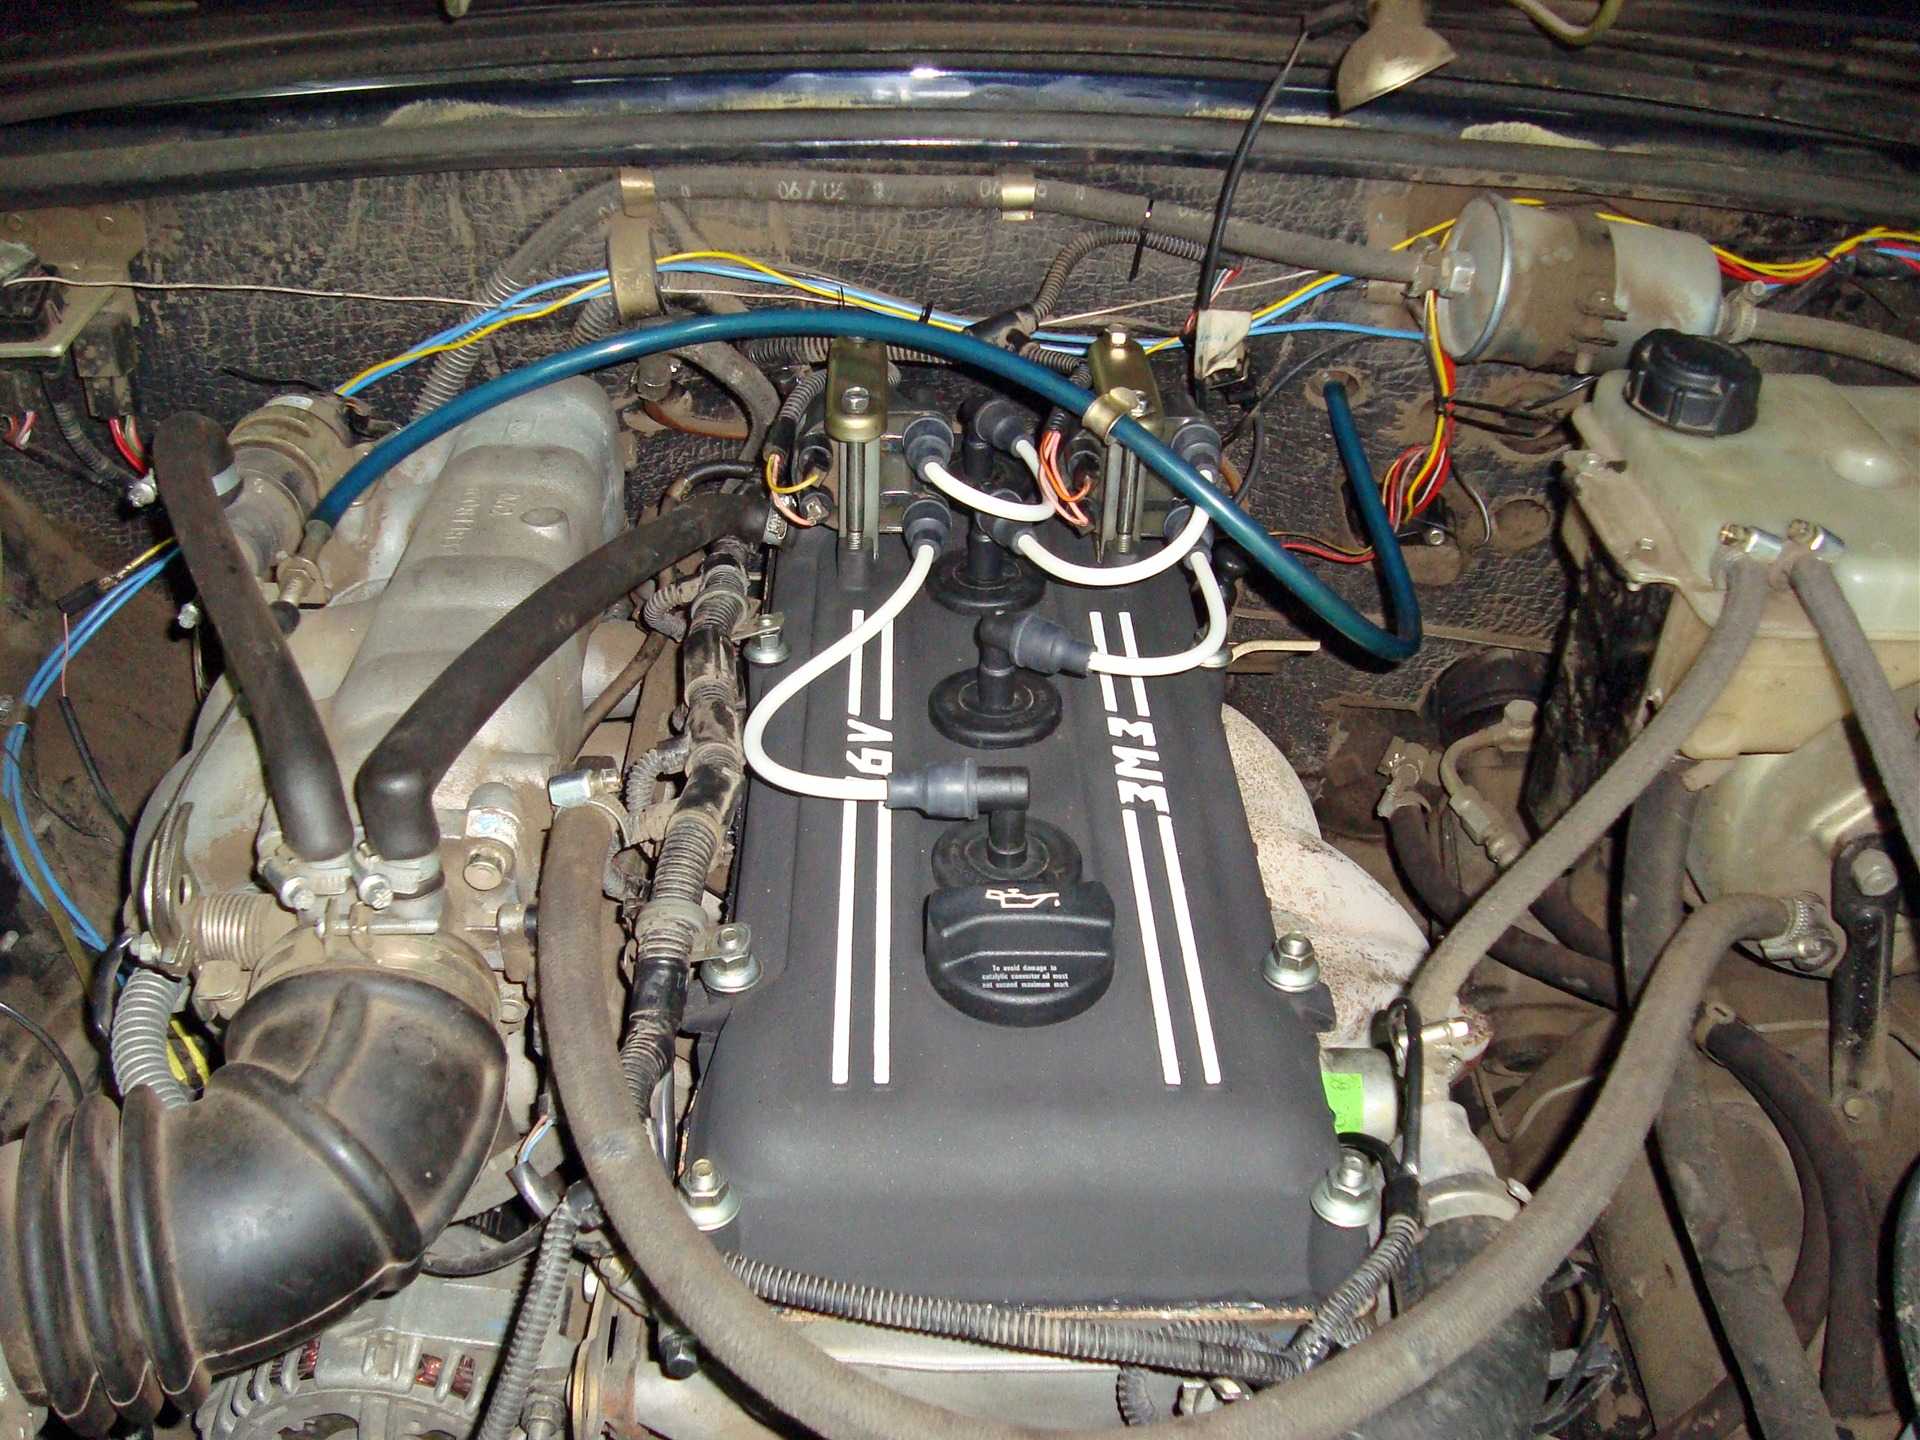 Настройка зажигания, проверка катушки и свечей на авто с двигателями змз-405, 406 и 409